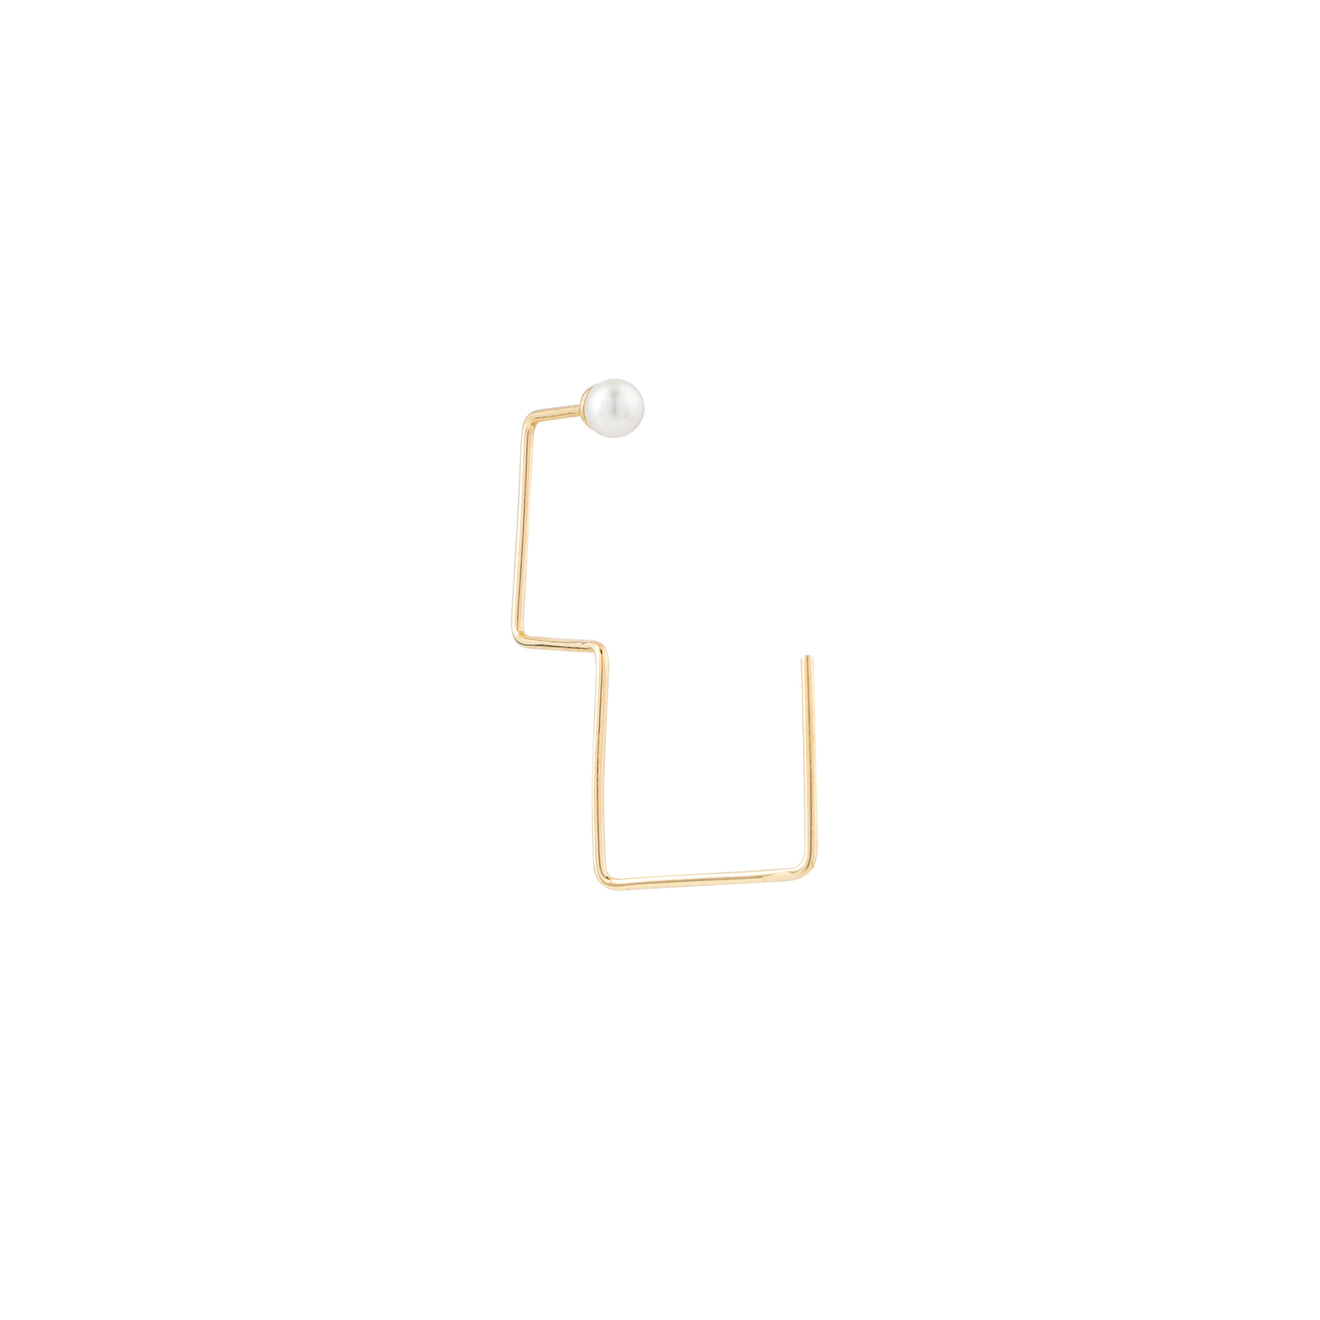 кулон из 18 каратного желтого золота подвеска с культивированным жемчугом таитянского южного моря класса ааа 10 11 мм ожерелье с цепочкой из 35.02 Геометрическая моносерьга из желтого золота с жемчугом